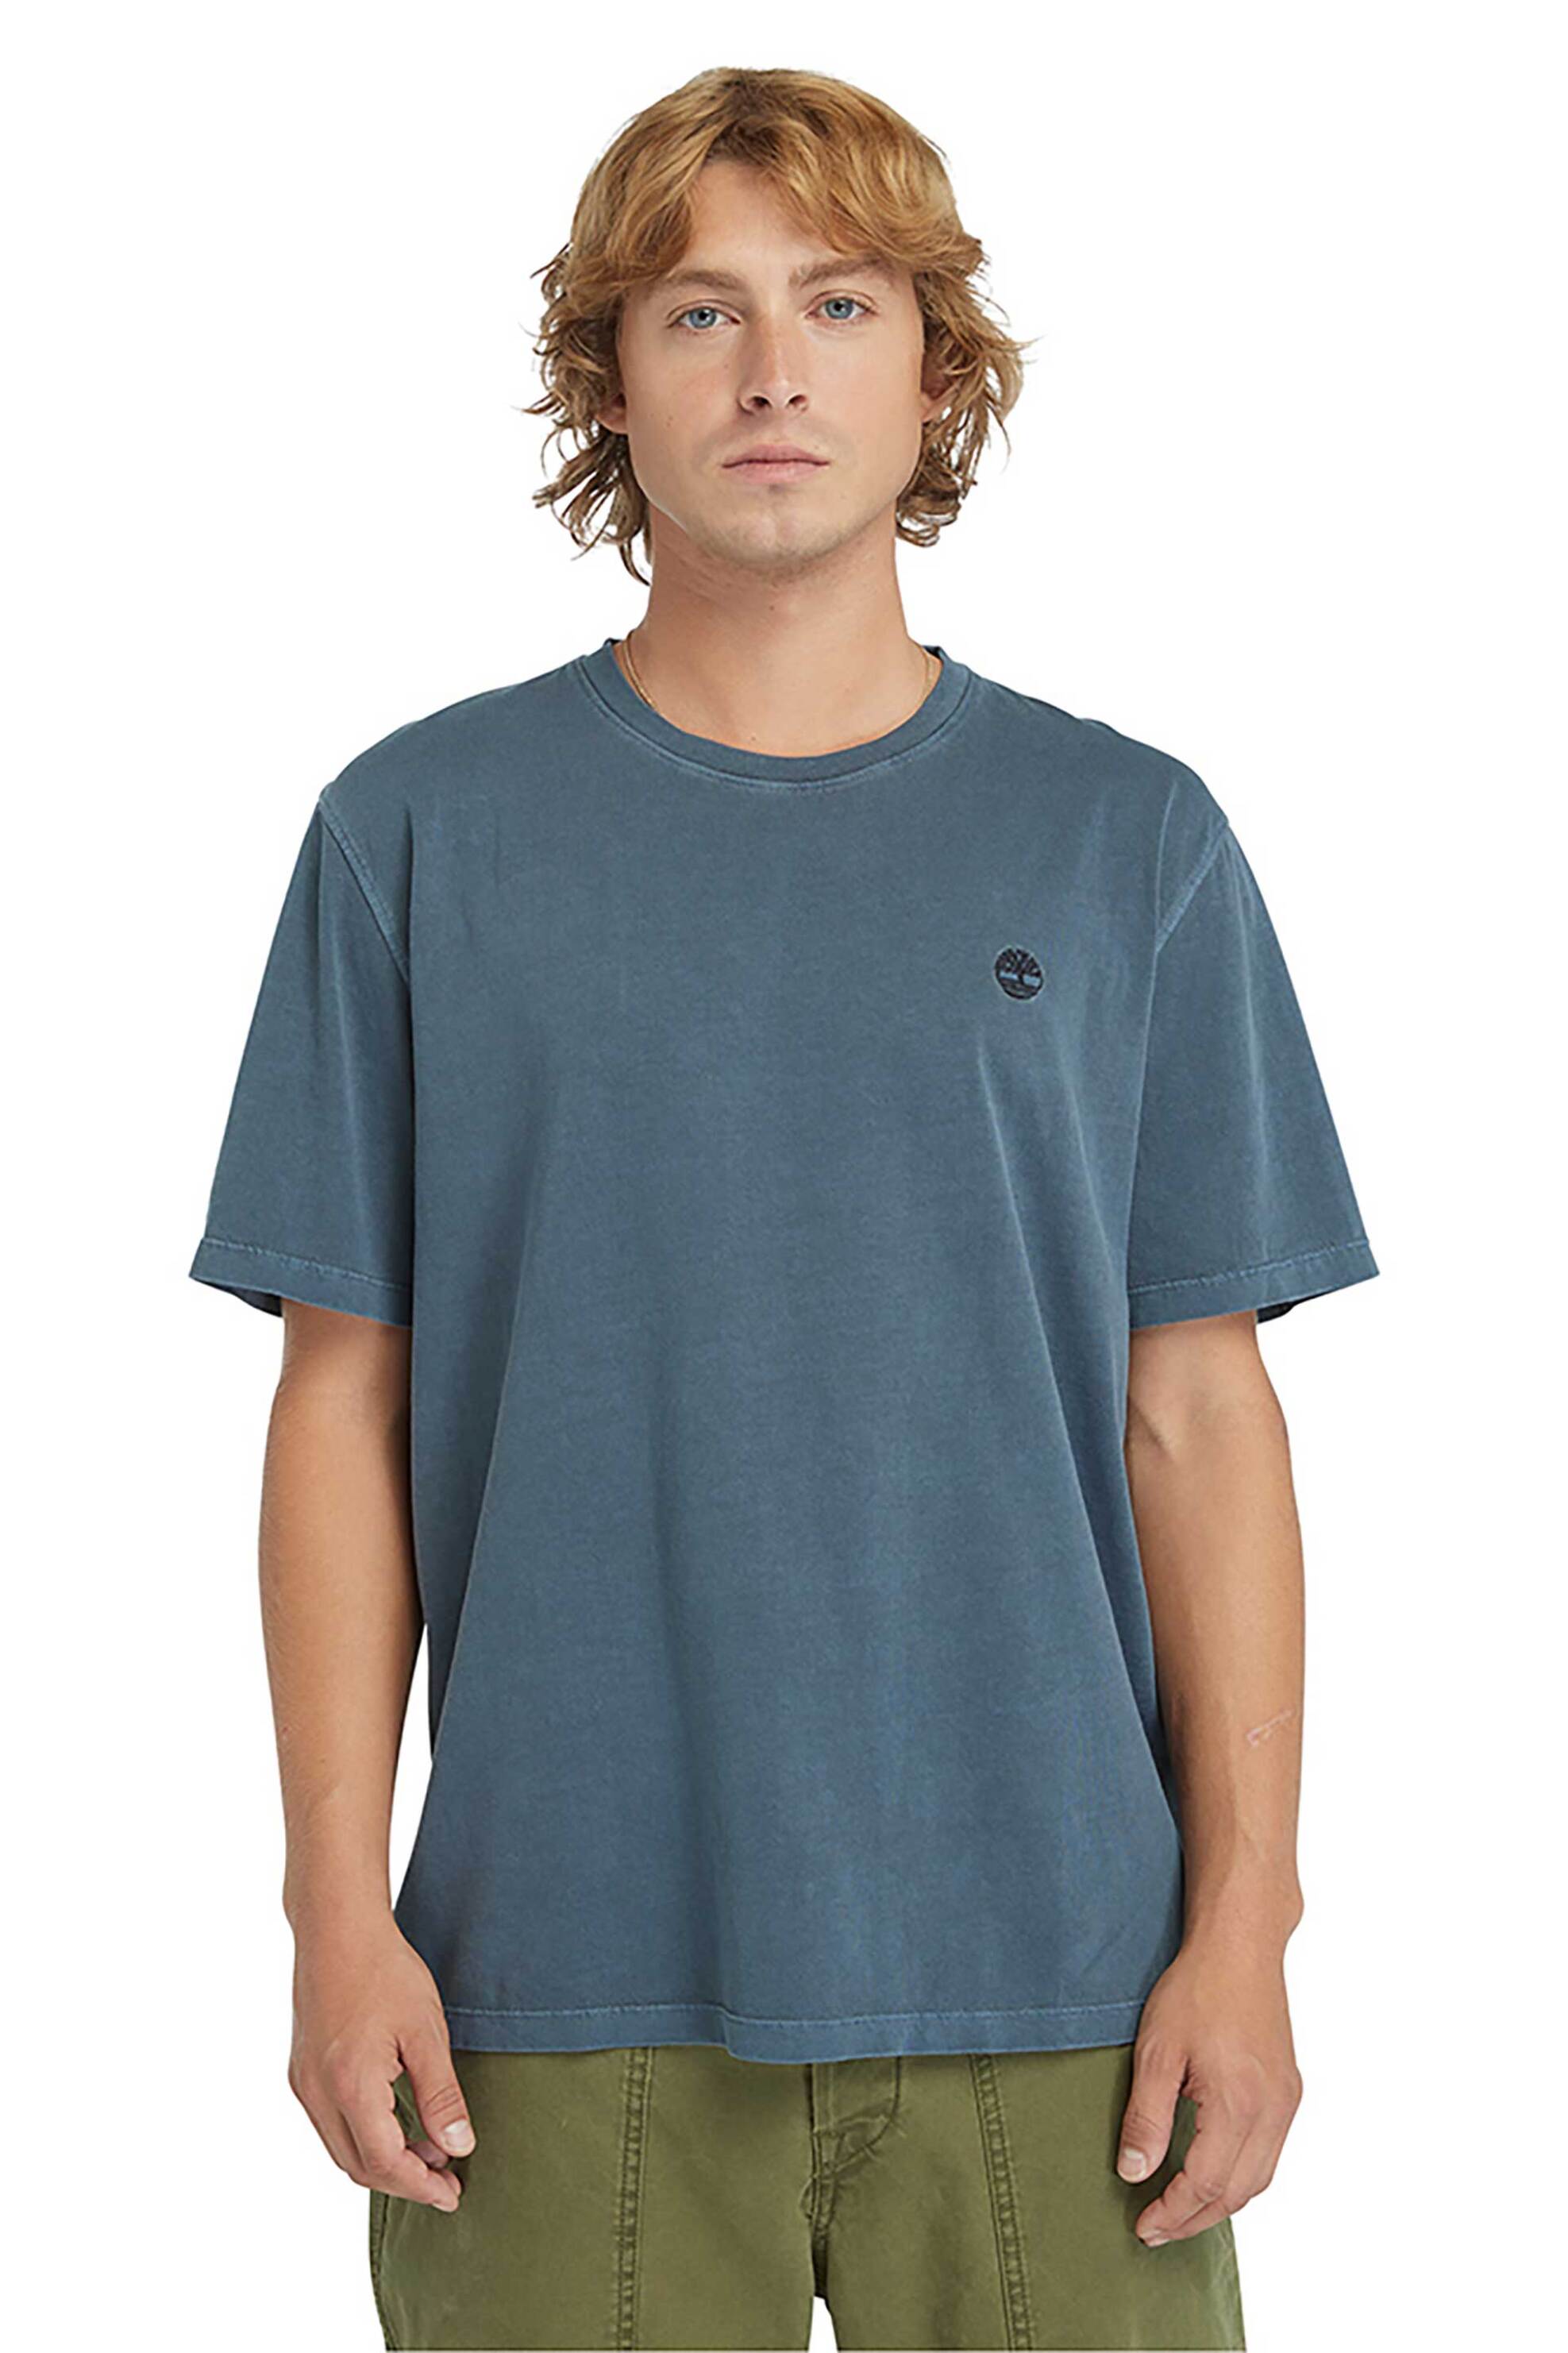 Ανδρική Μόδα > Ανδρικά Ρούχα > Ανδρικές Μπλούζες > Ανδρικά T-Shirts Timberland ανδρικό T-shirt Authentic Fit "Dunstan Garment Dye" - TB0A5YAY4331 Μπλε Σκούρο